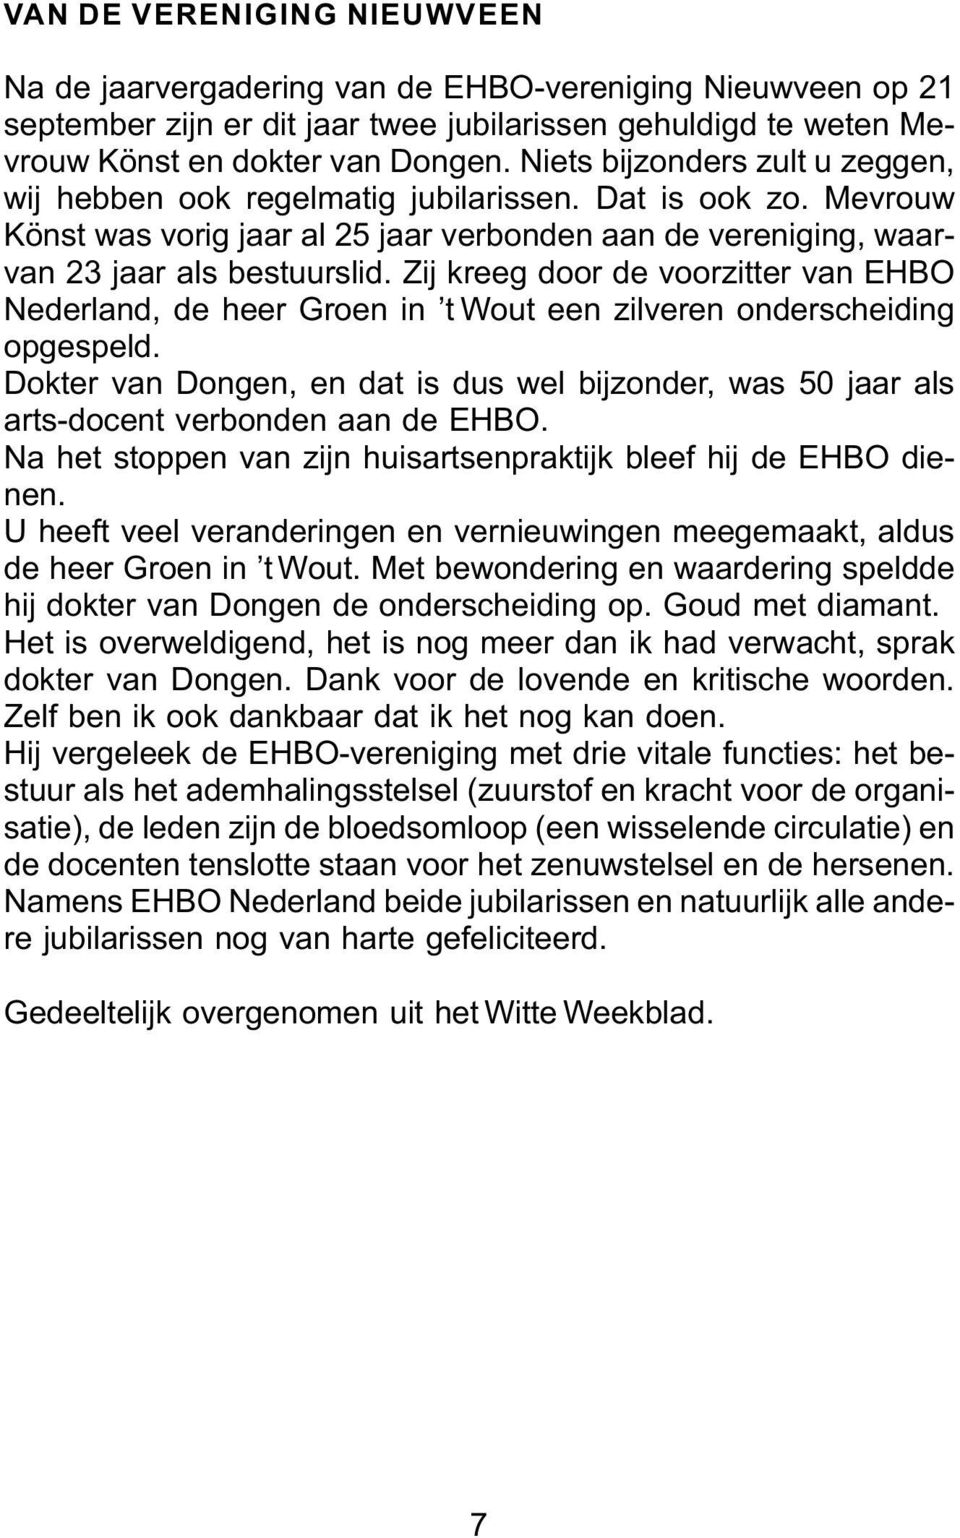 Zij kreeg door de voorzitter van EHBO Nederland, de heer Groen in t Wout een zilveren onderscheiding opgespeld.